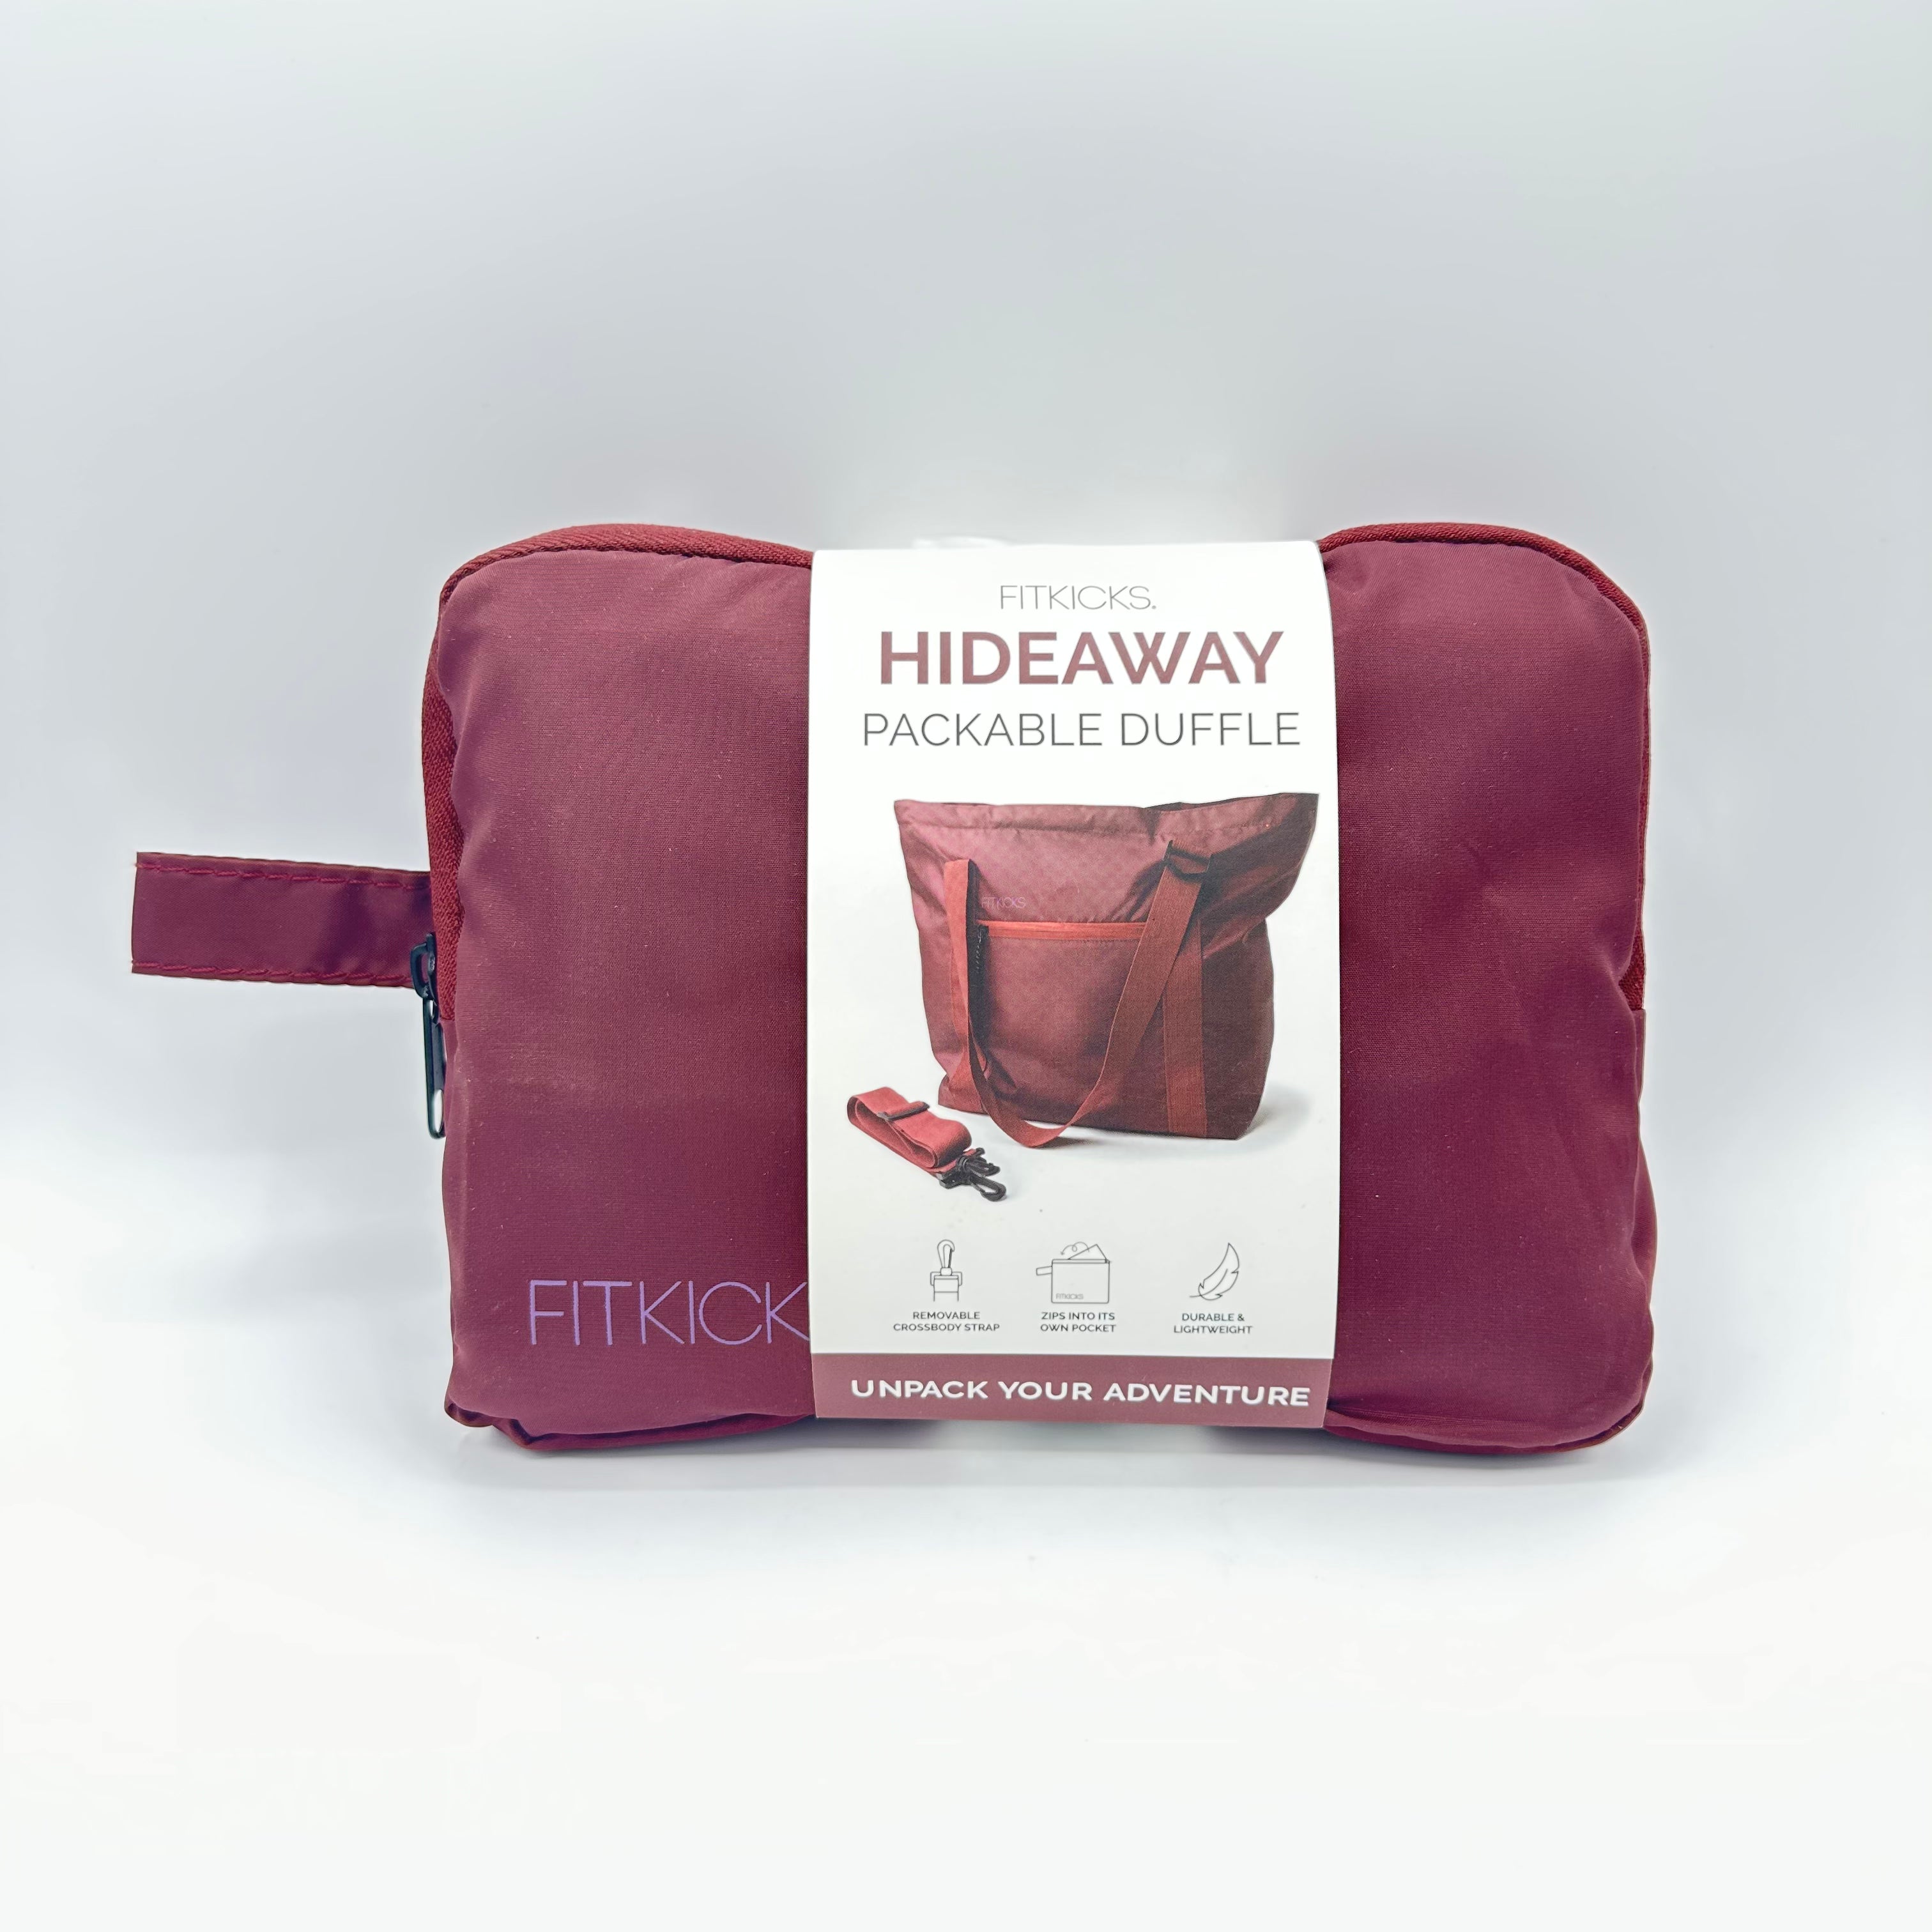 Hideaway Packable Duffle